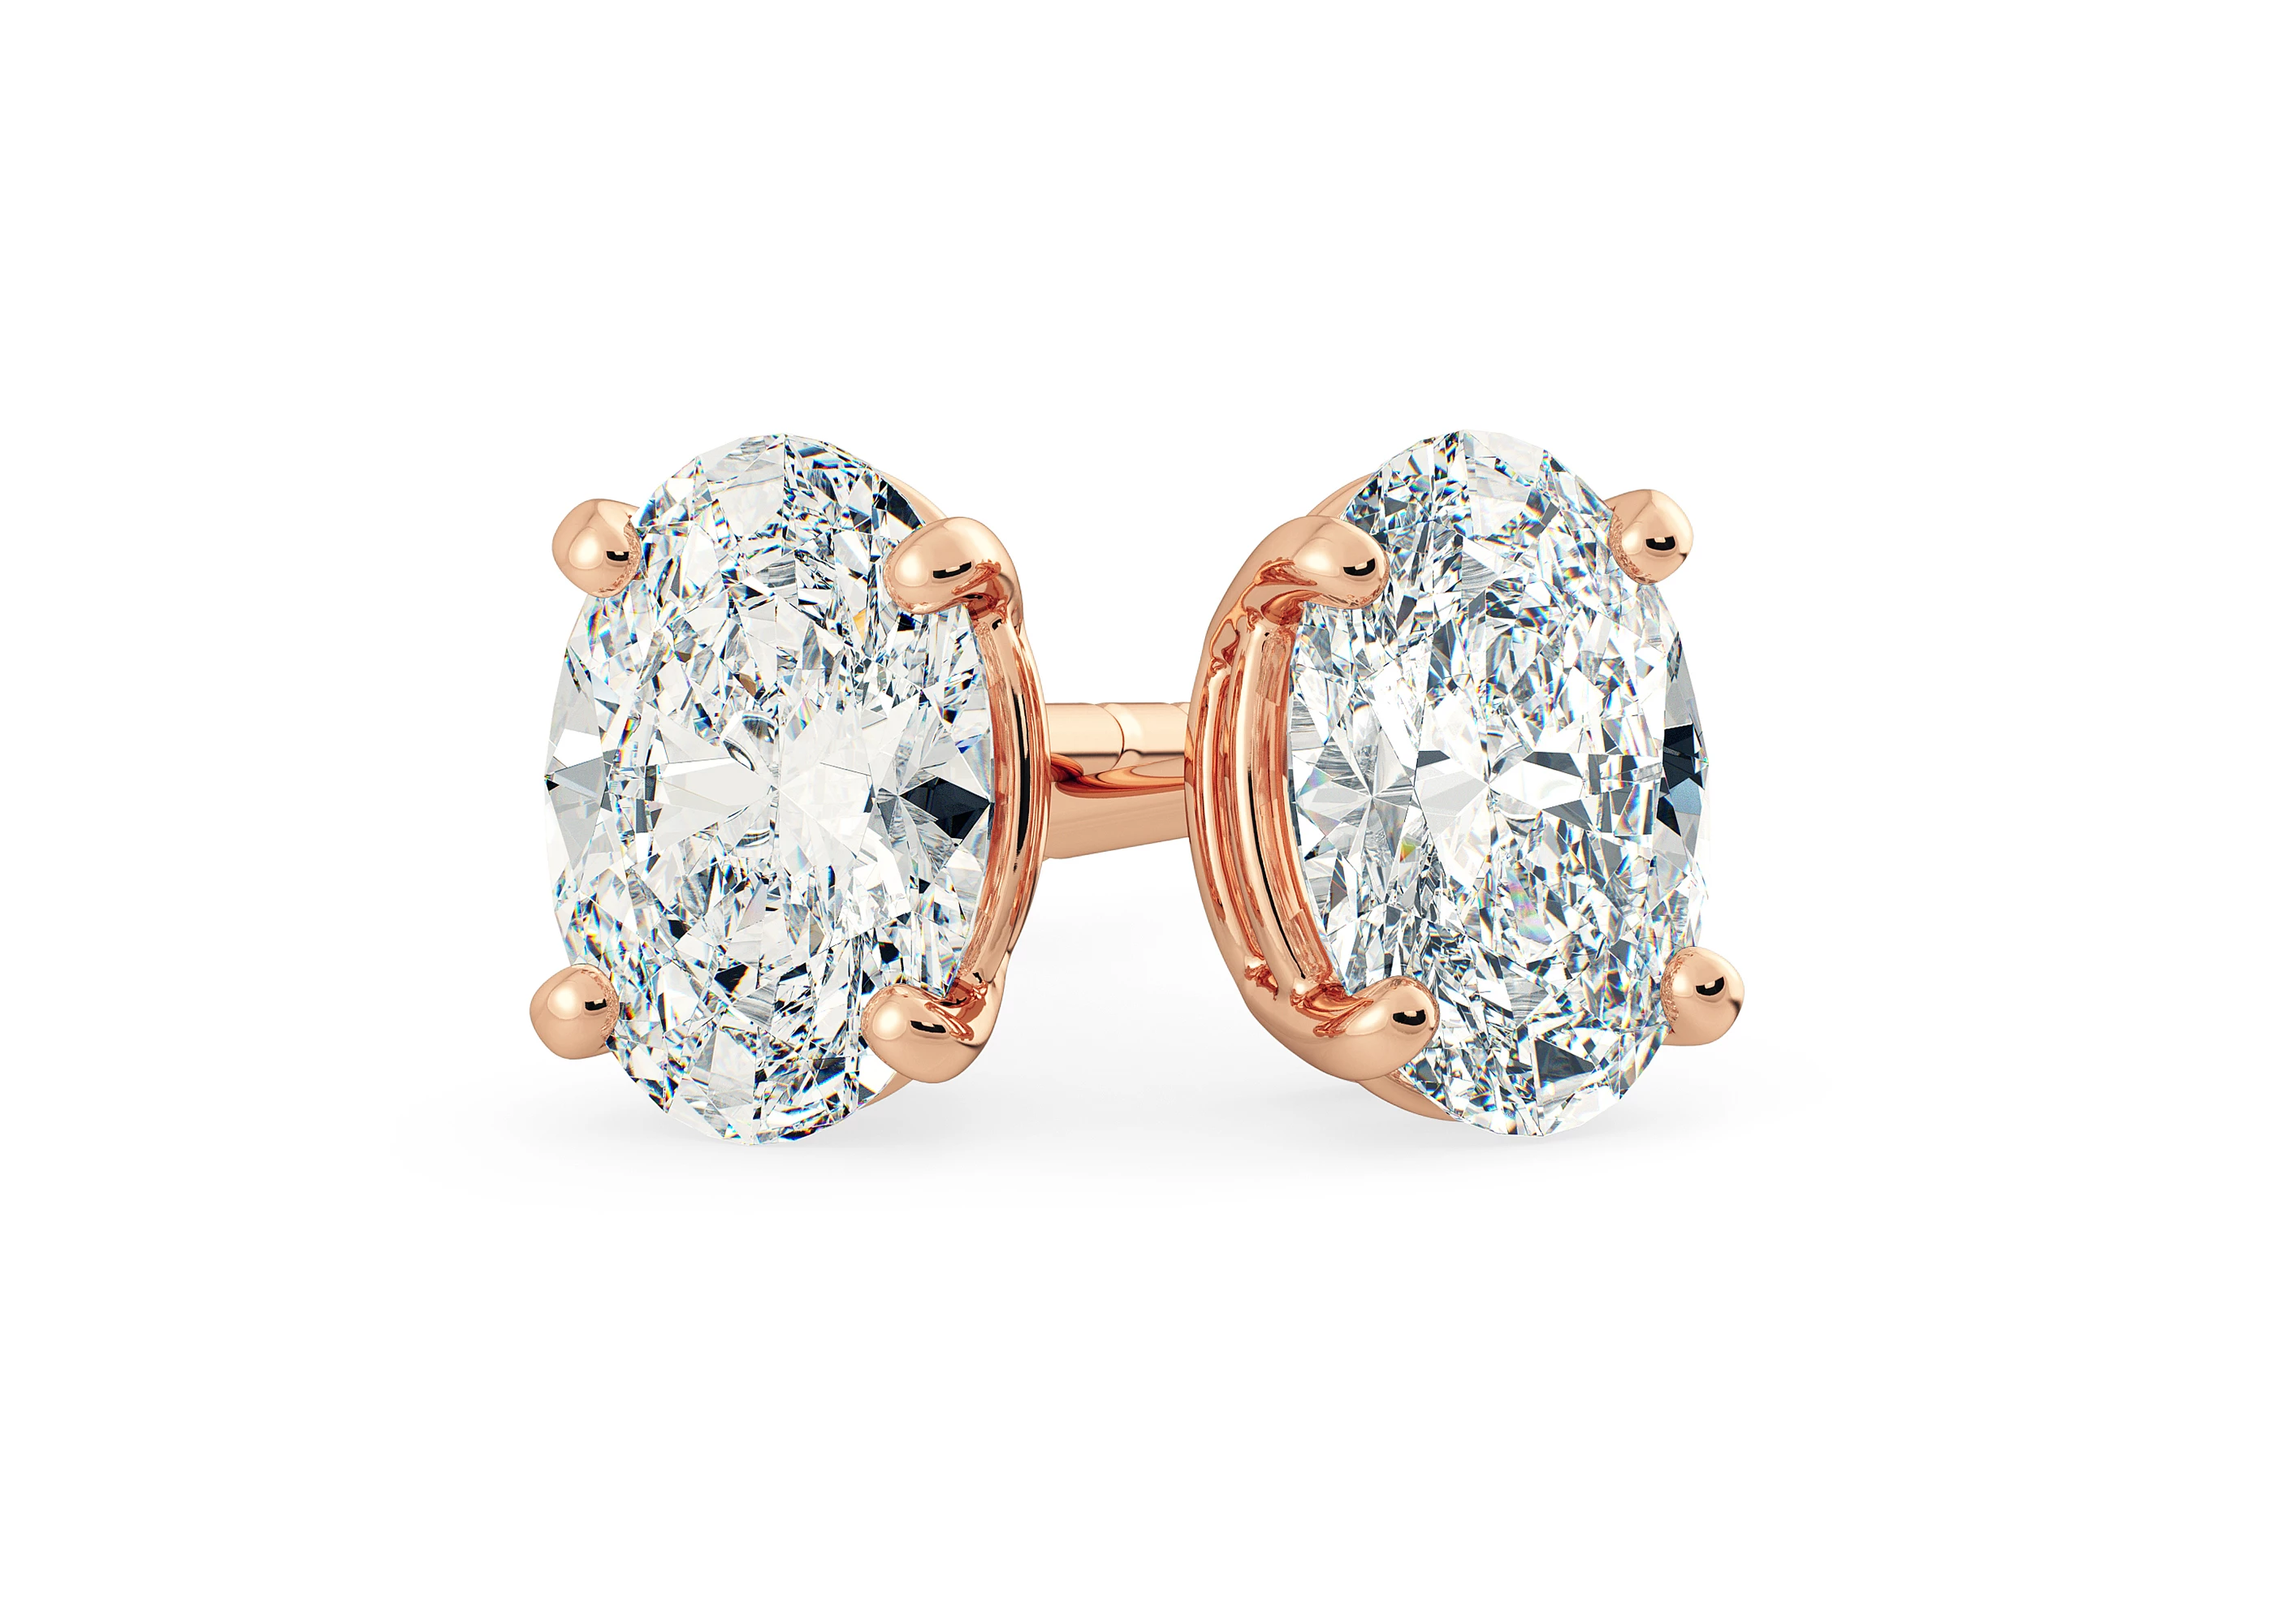 Ettore Oval Diamond Stud Earrings in 18K Rose Gold with Butterfly Backs